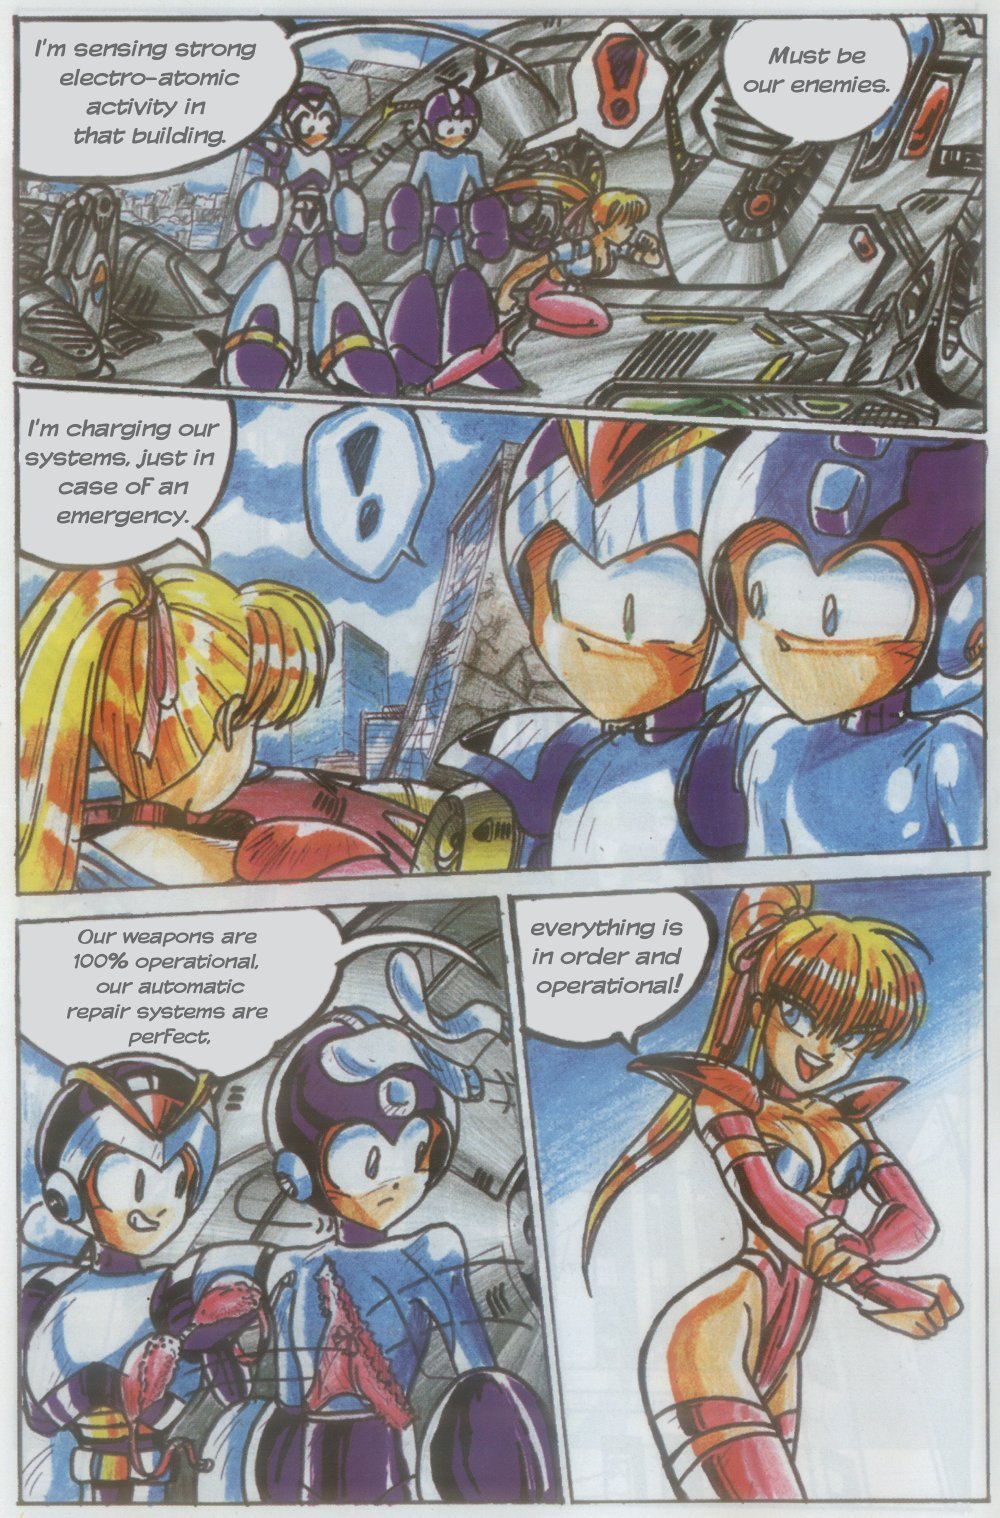 Novas Aventuras de Megaman Issue 1 Novas Aventuras de Megaman Iss...